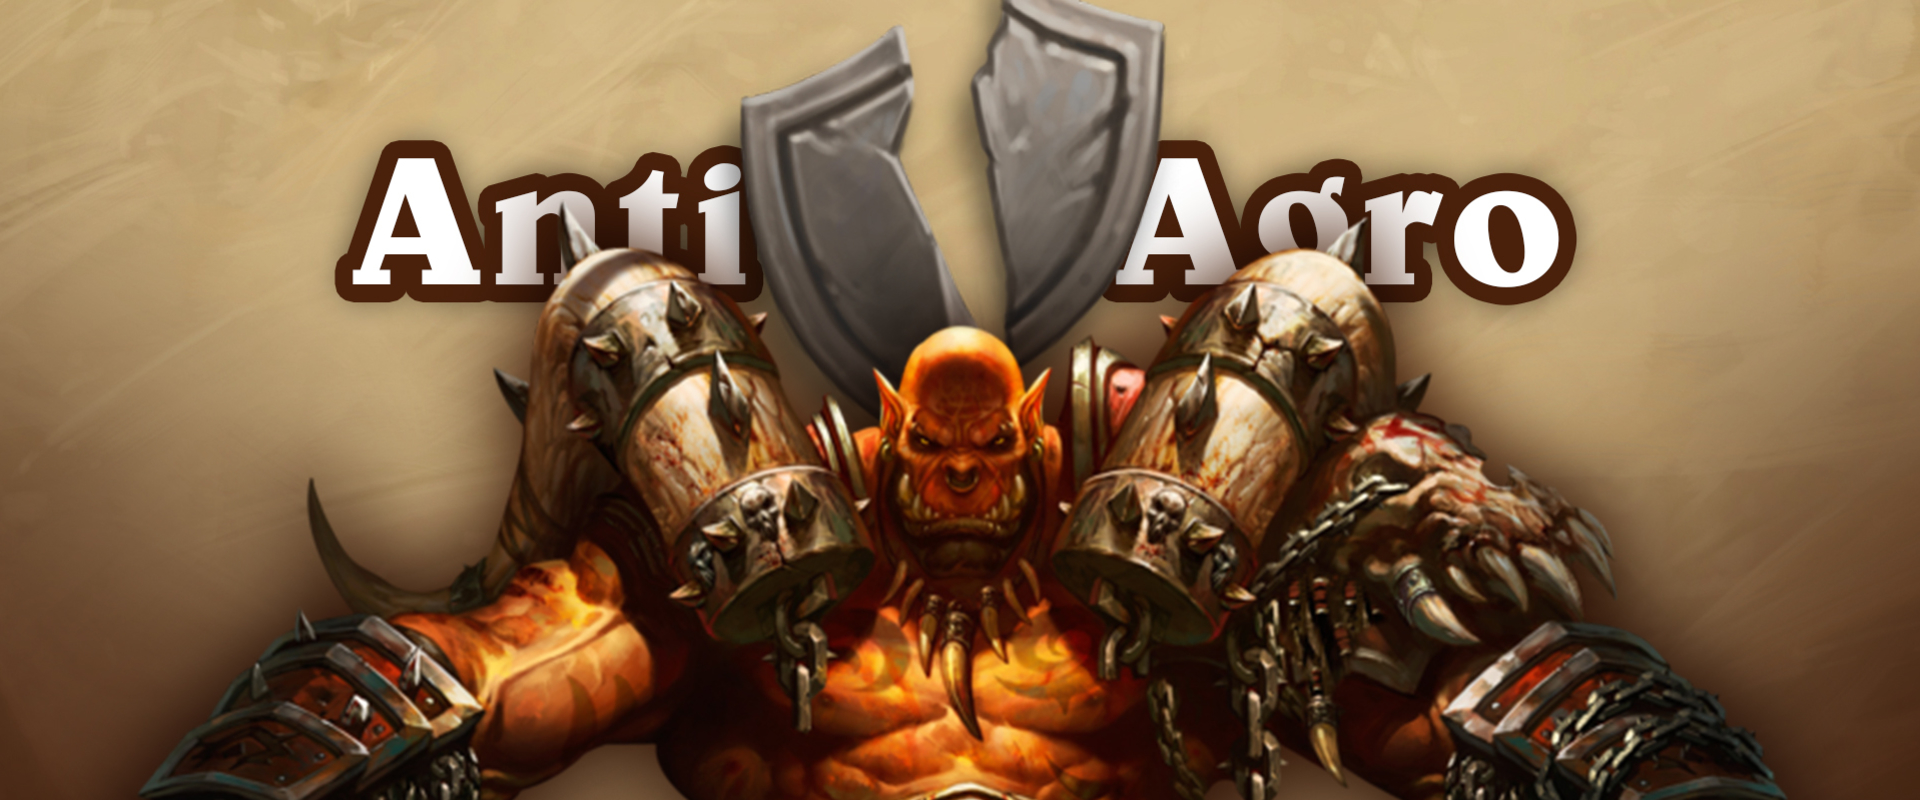 Anti Aggro Warrior -avagy: érték és kontrol